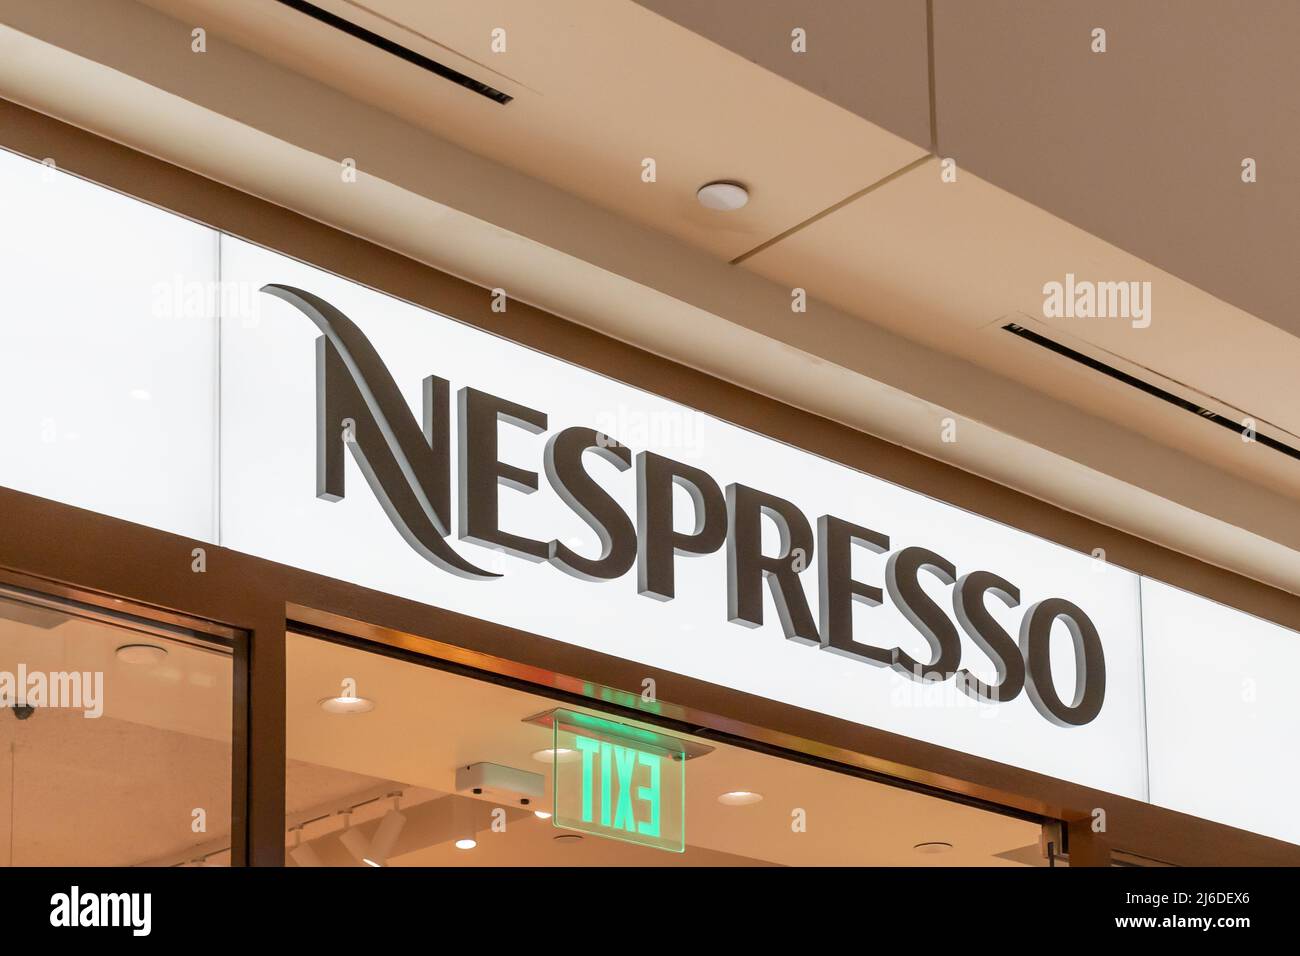 Houston, Texas, USA - 25. Februar 2022: Nespresso-Ladenschild in einem Einkaufszentrum. Nespresso-Maschinen brühen Espresso und Kaffee aus Kaffeekapseln. Stockfoto